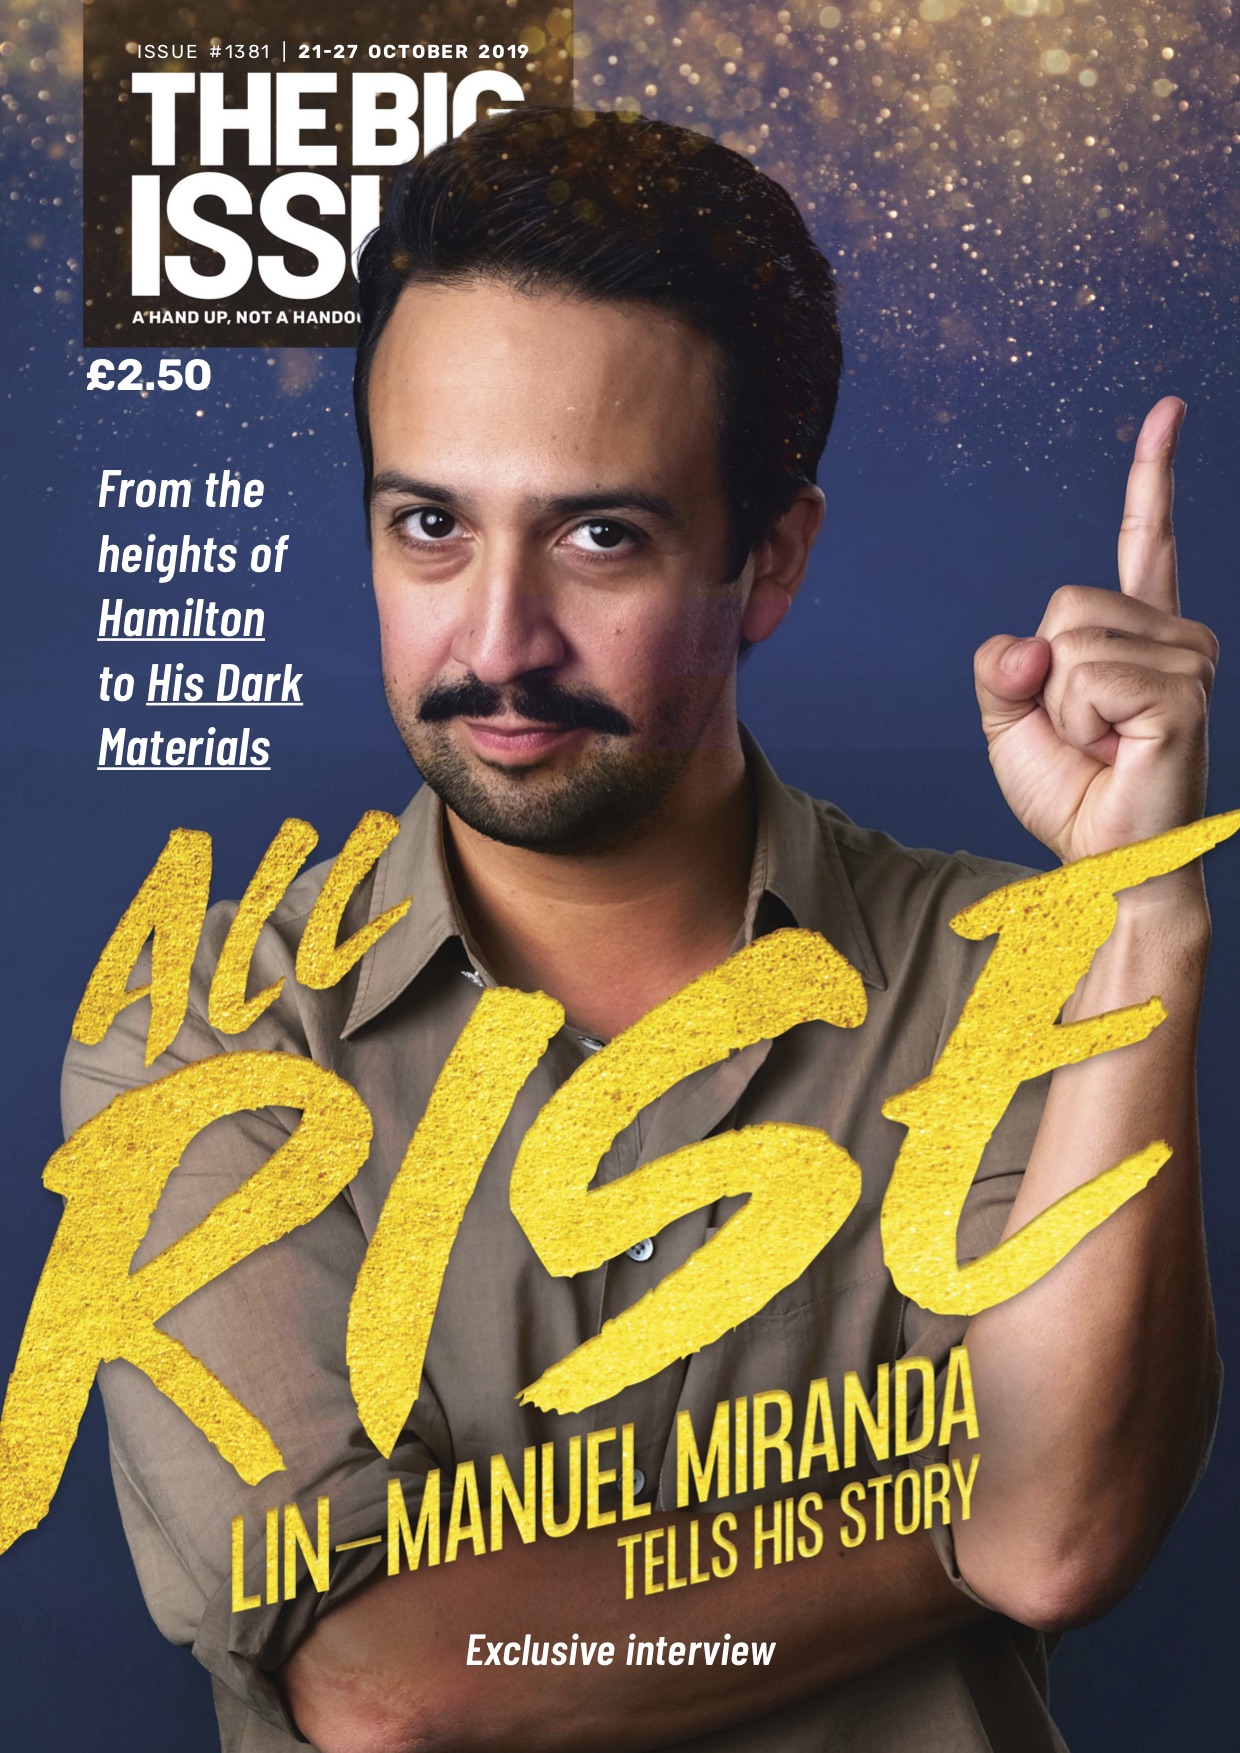 All rise! Lin-Manuel Miranda tells his story